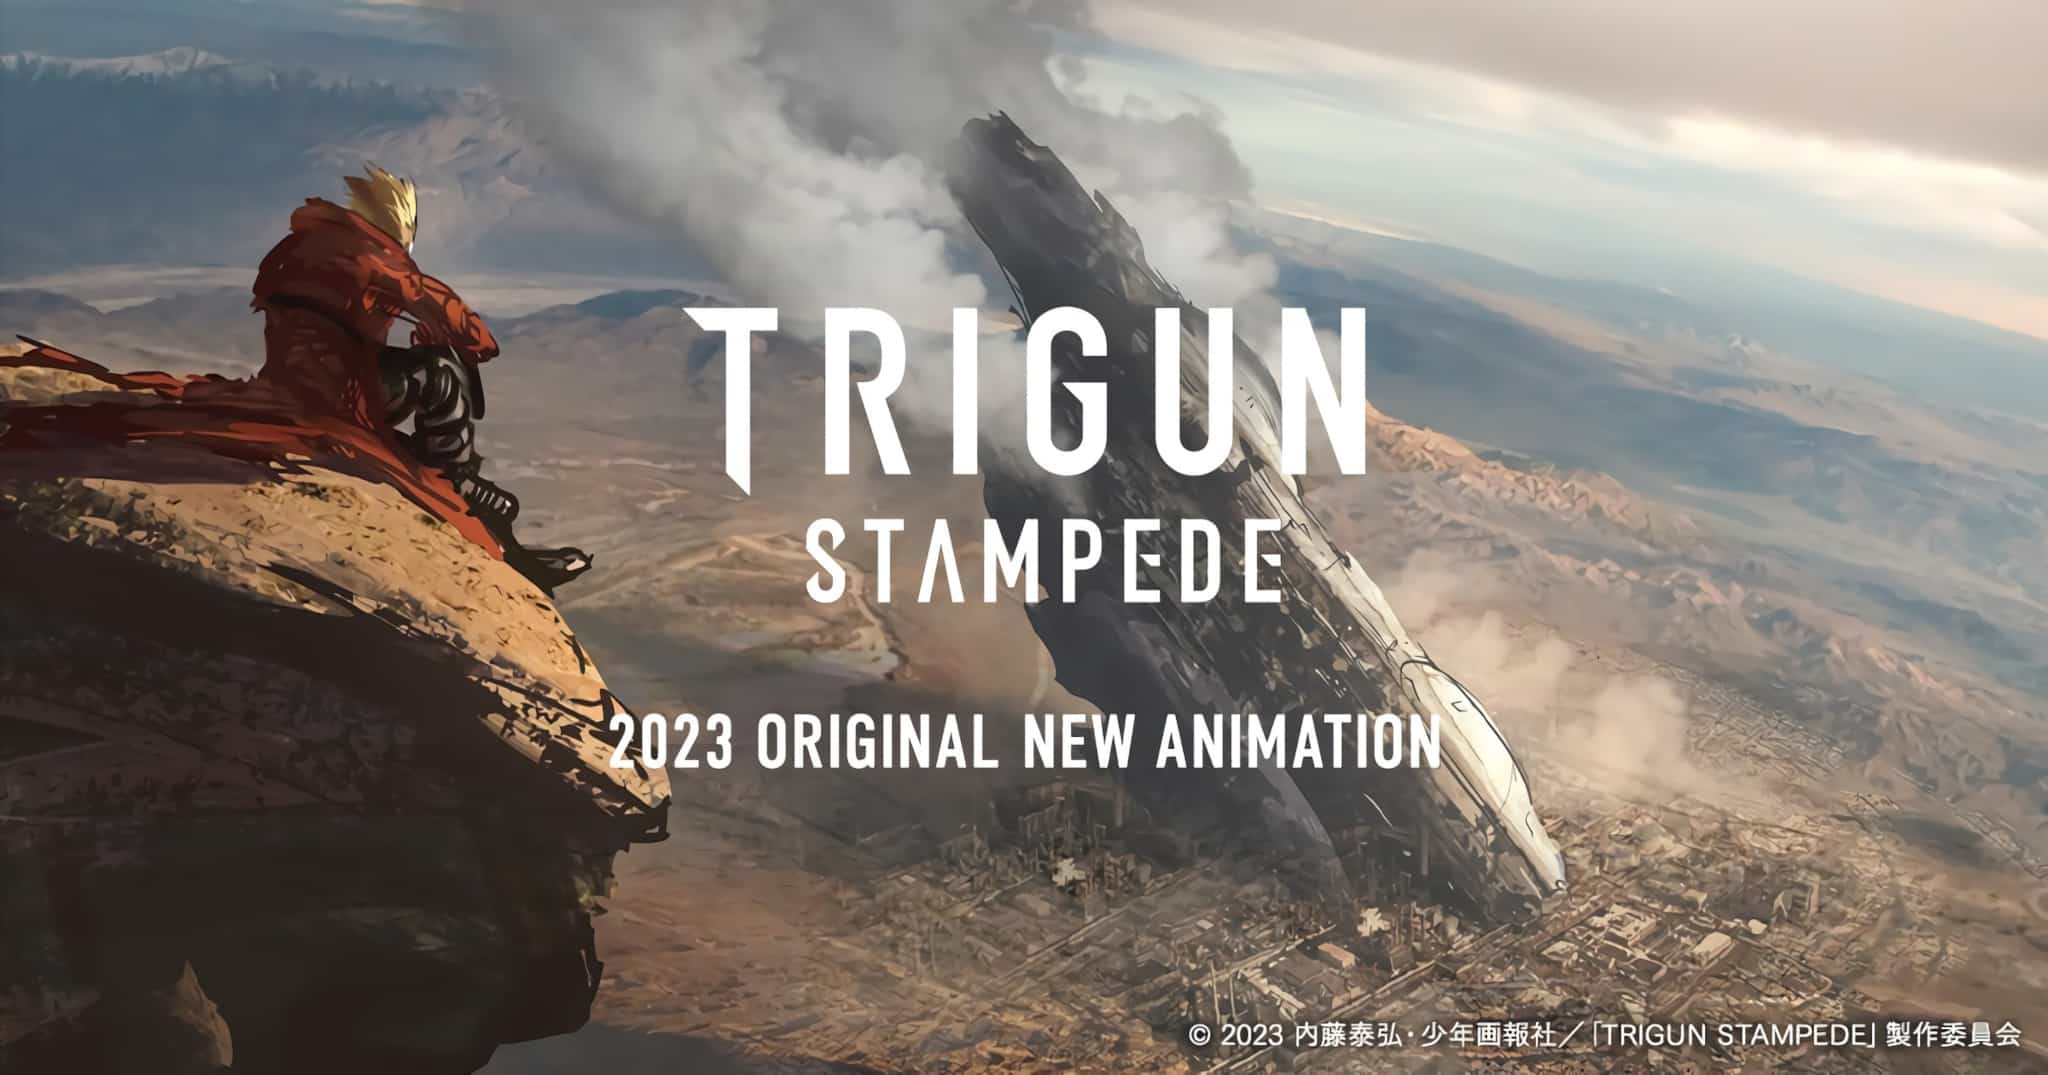 Annonce de lanime TRIGUN Stampede pour 2023